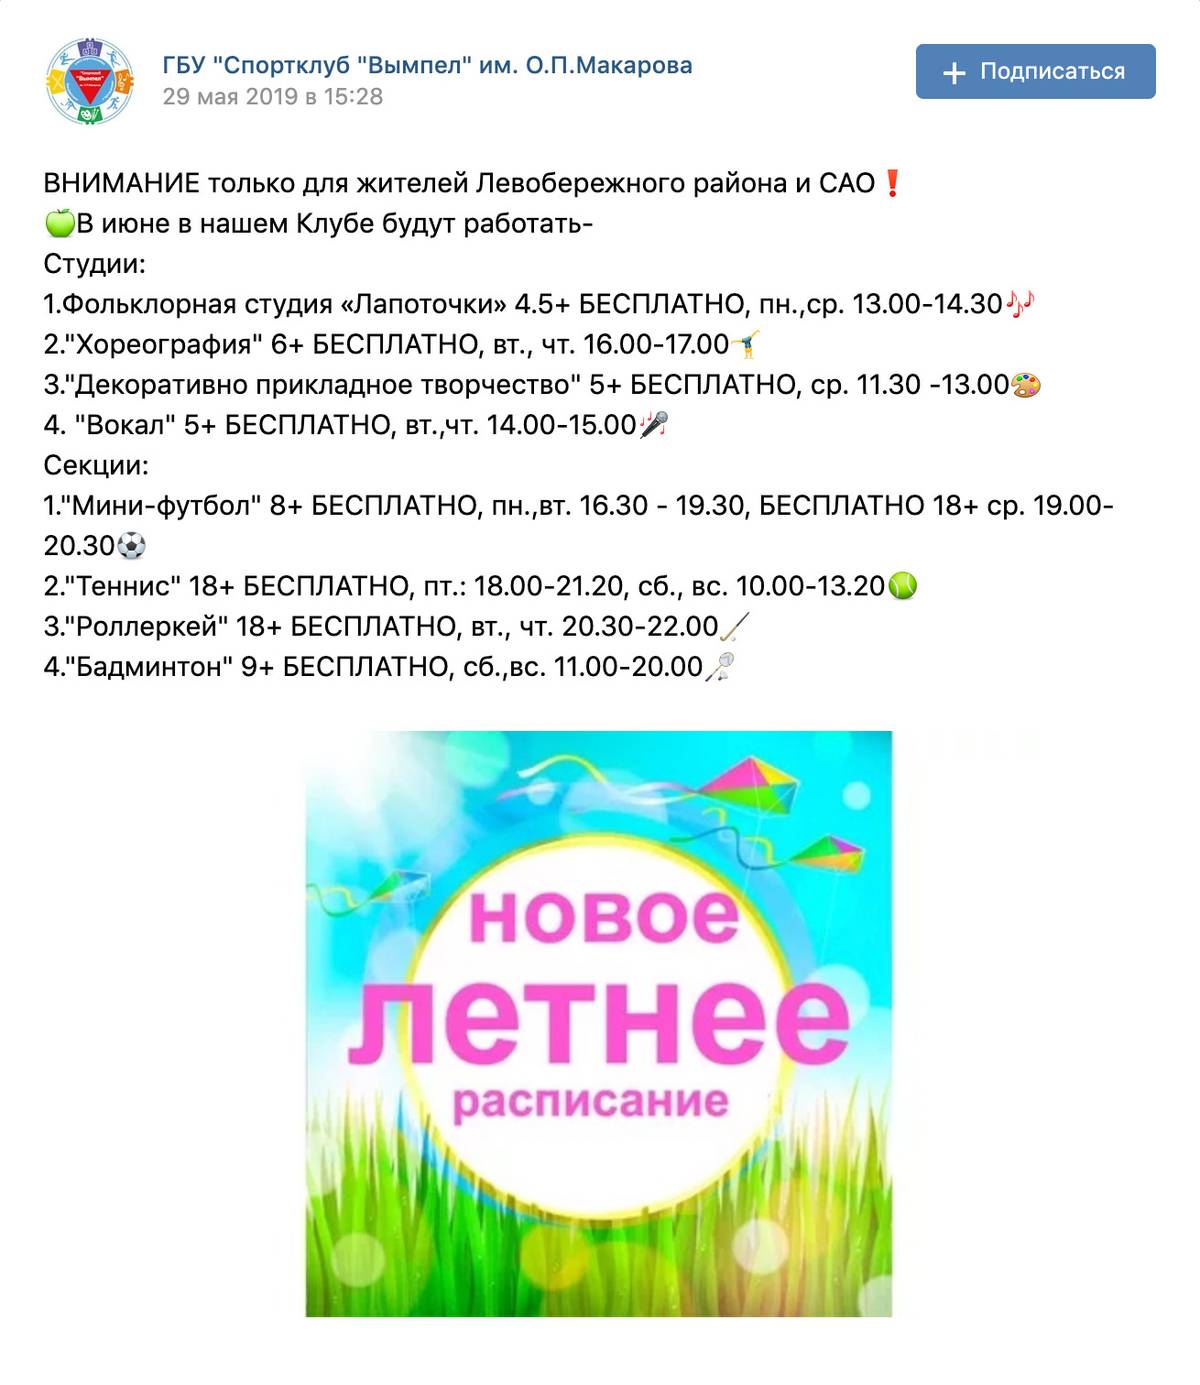 Афиша бесплатных занятий в районном спортклубе на странице во Вконтакте